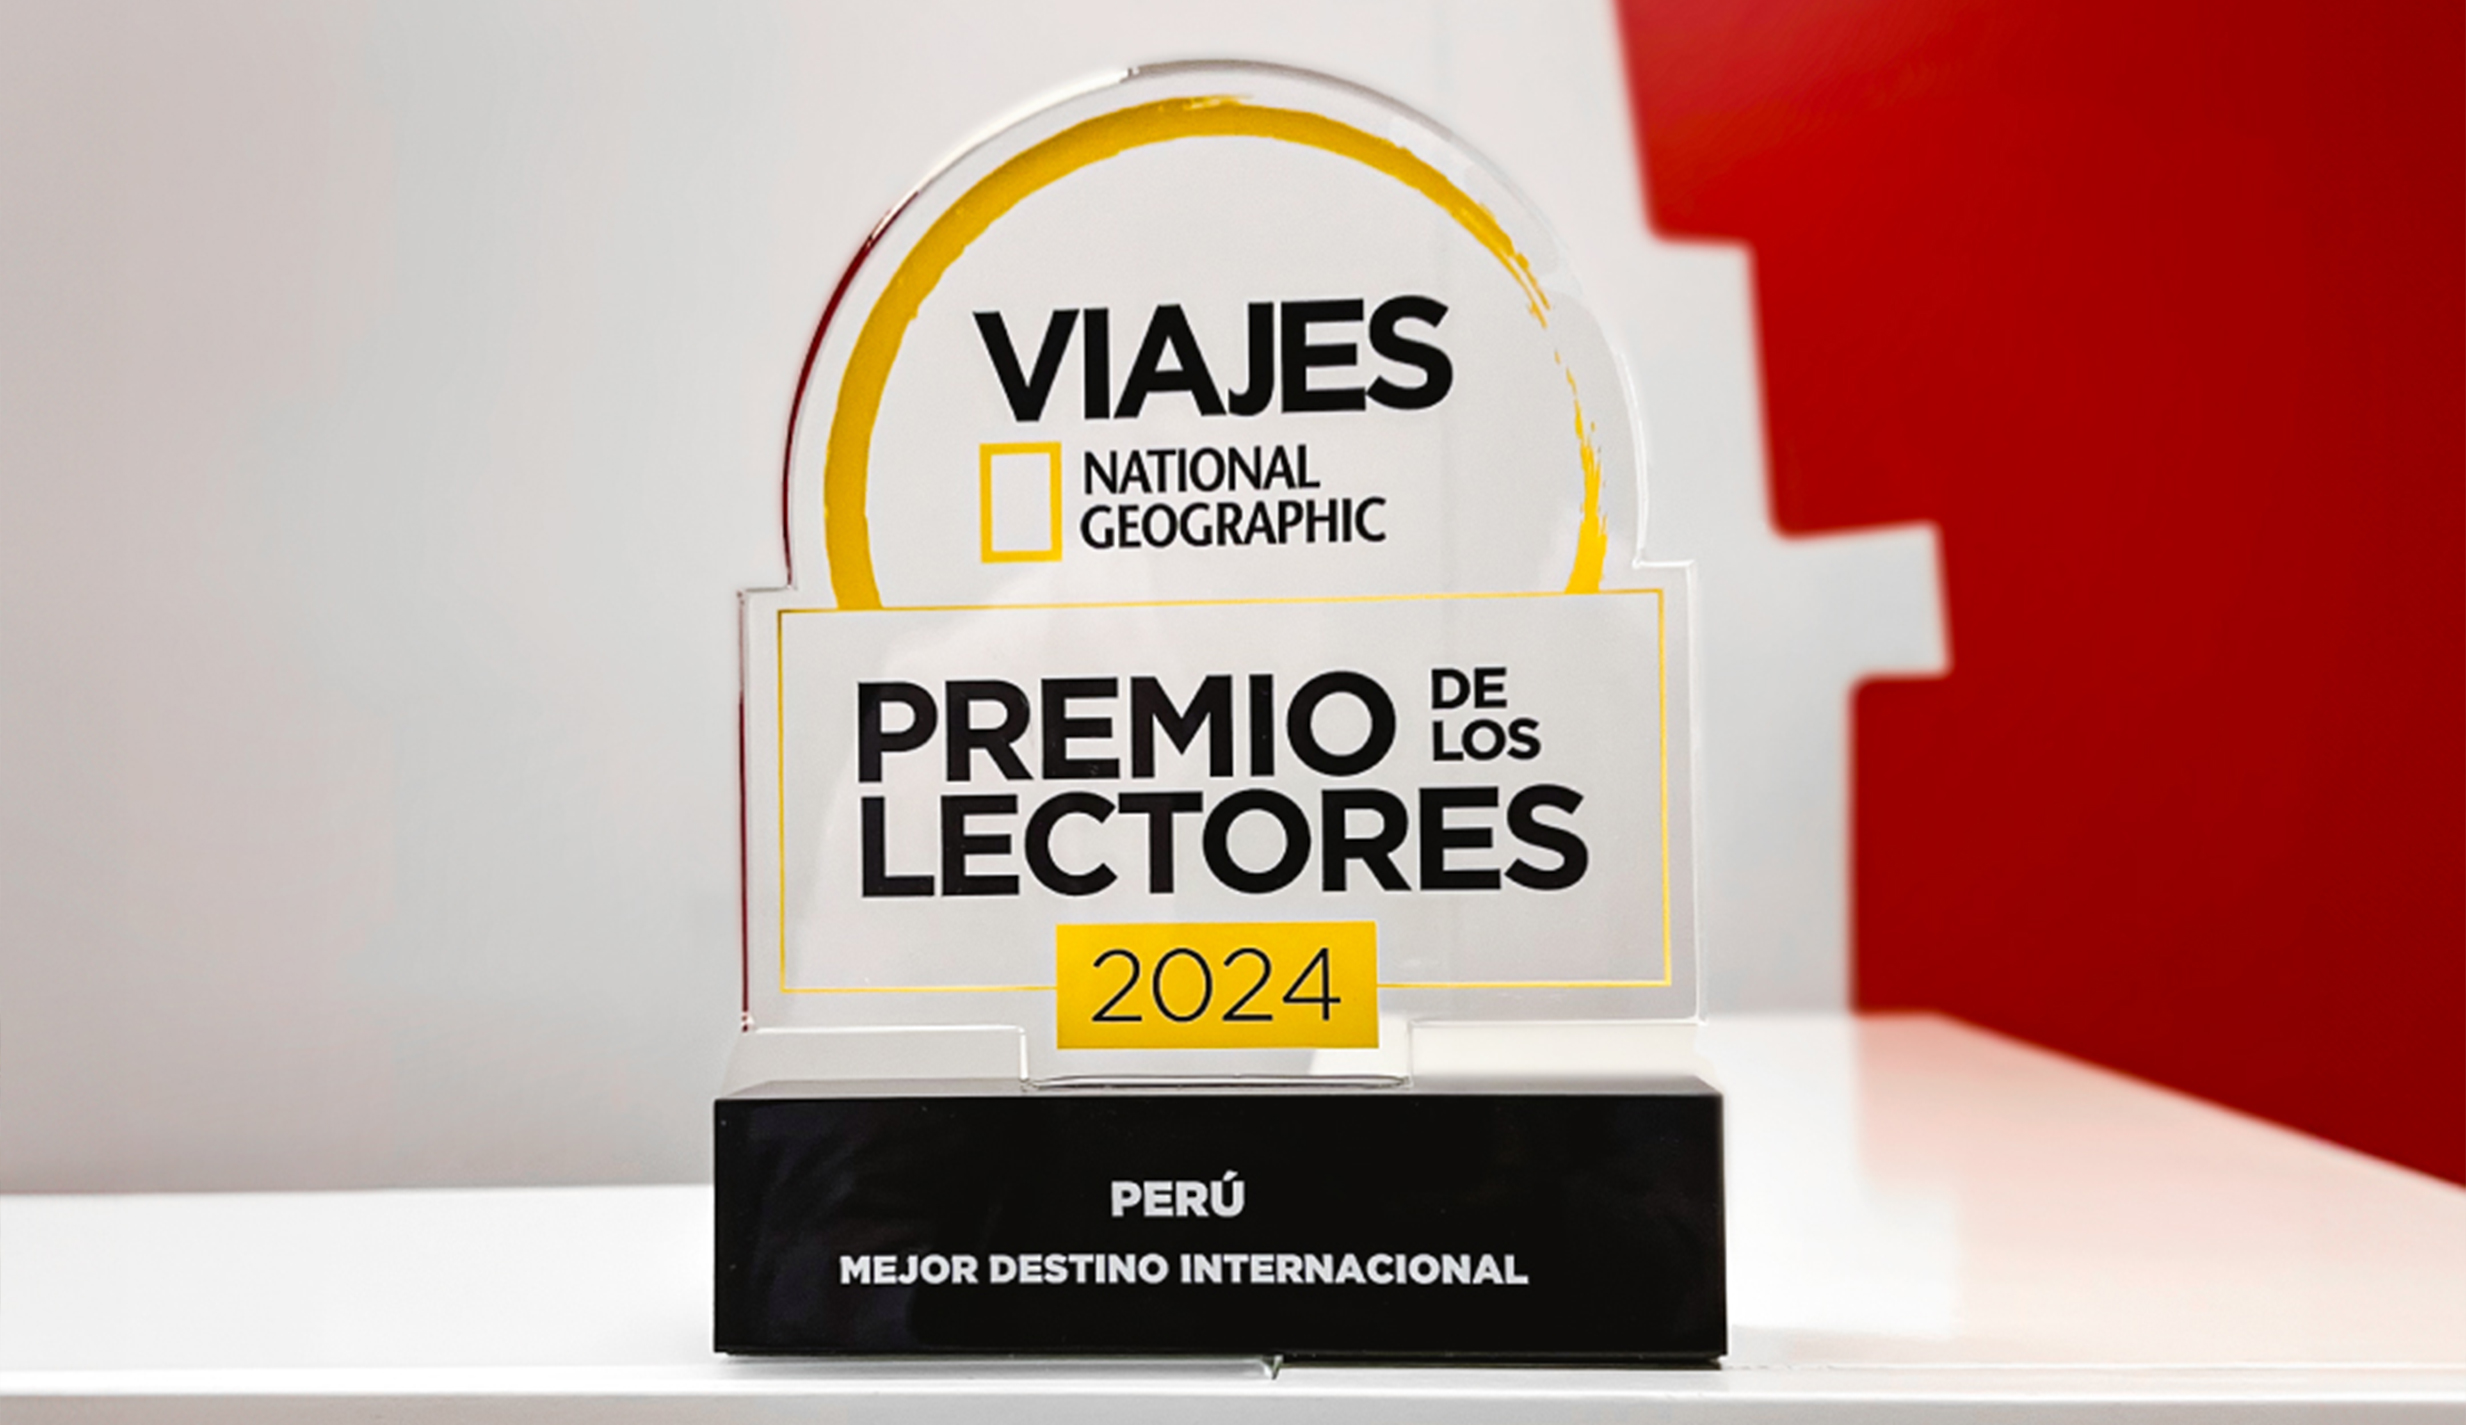 Peru best international destination